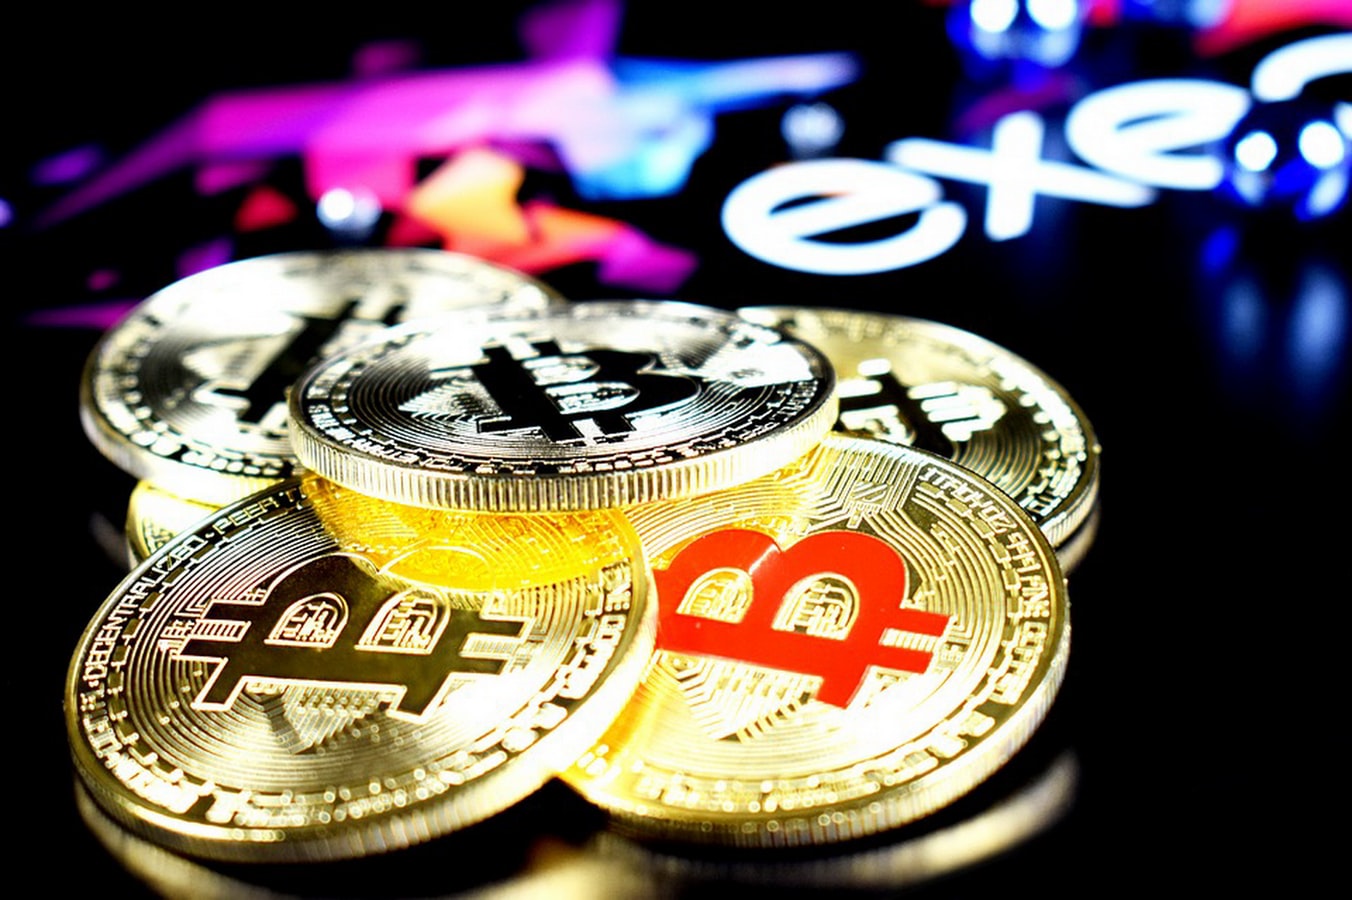 Des pièces de Bitcoin, l'une des cryptomonnnaies les plus connues.